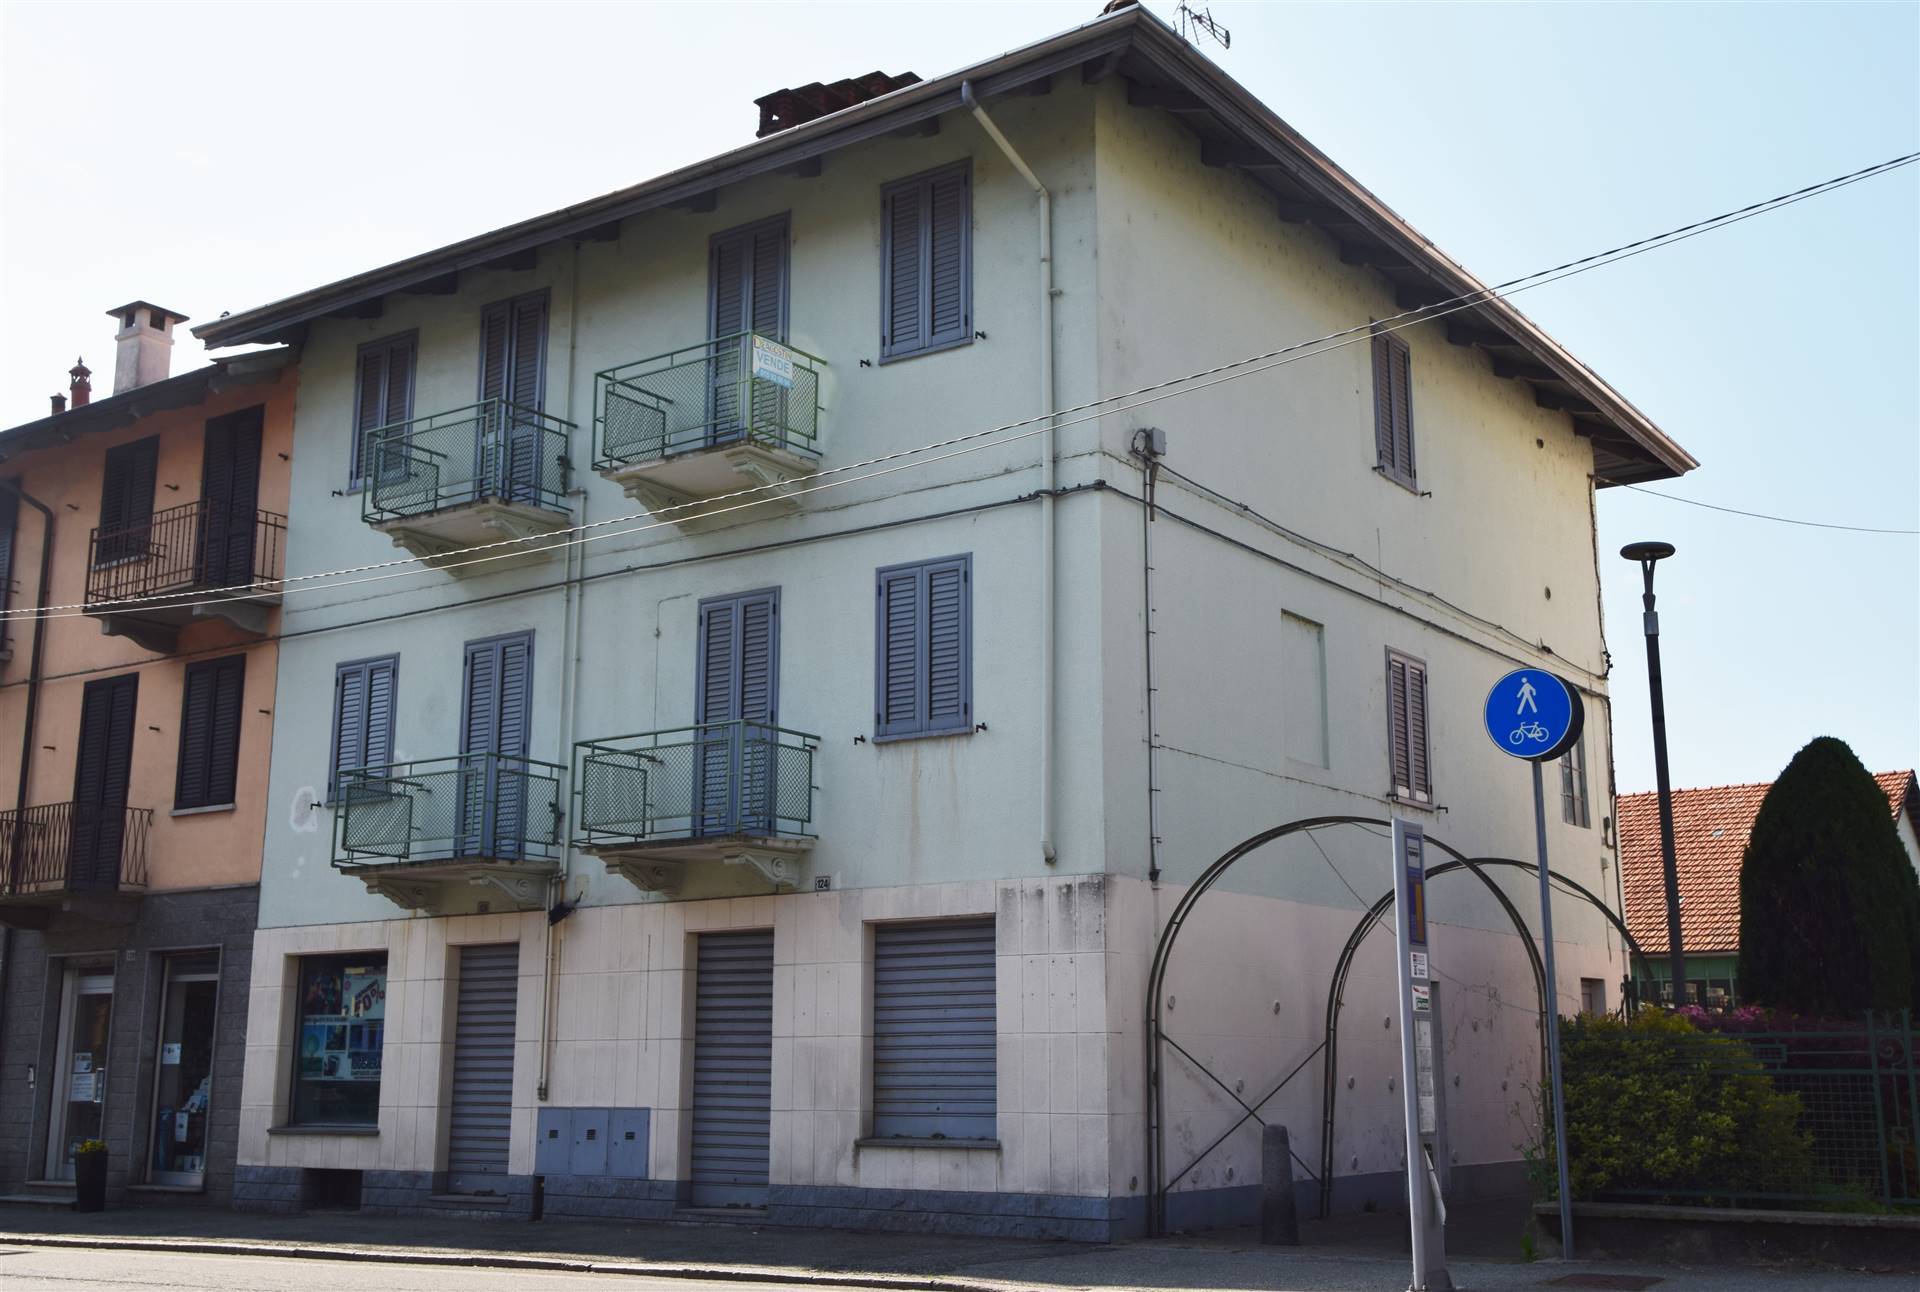 Negozio / Locale in vendita a Vigliano Biellese, 2 locali, prezzo € 20.000 | CambioCasa.it